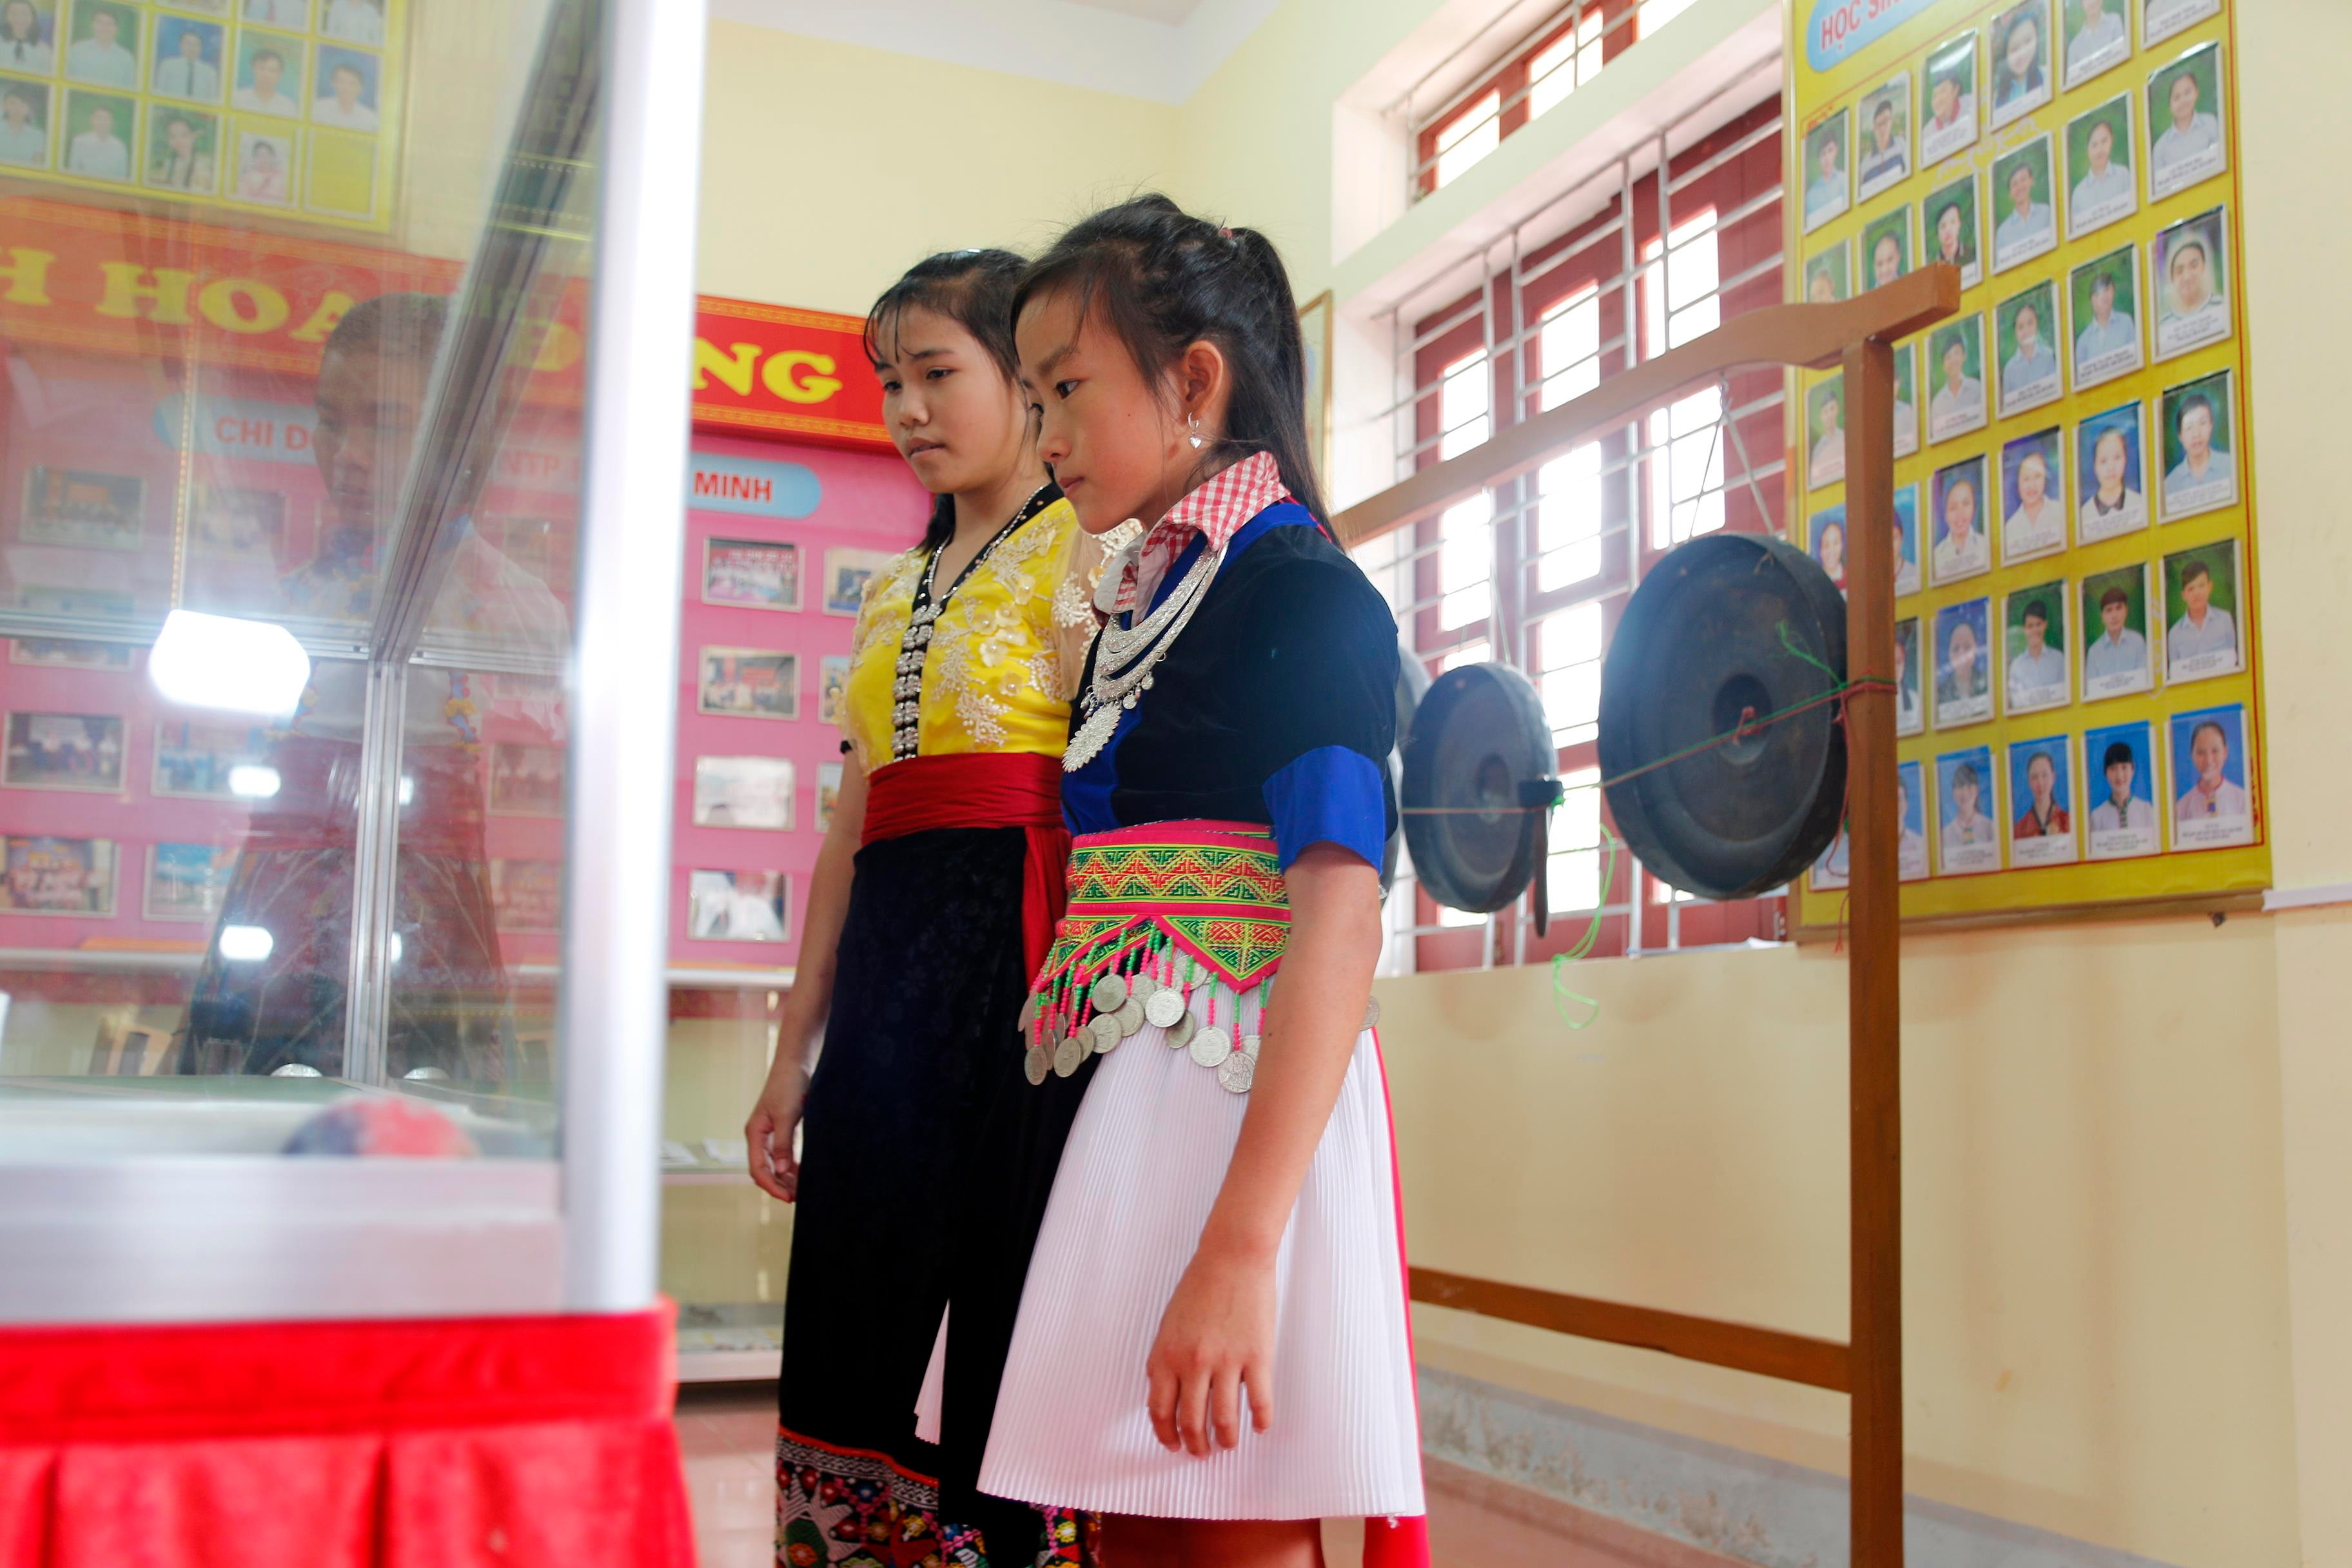 Cùng với bộ trang phục dân tộc Thái, trang phục dân tộc Mông cũng được xem là một bộ trang phục đẹp với nhiều mùa sắc rực rỡ và khá cần kỳ. Em Vừa Y Tồng (DT Mông), học sinh lớp 6B Trường PTDTNT THCS Tương Dương vui vẻ nói 